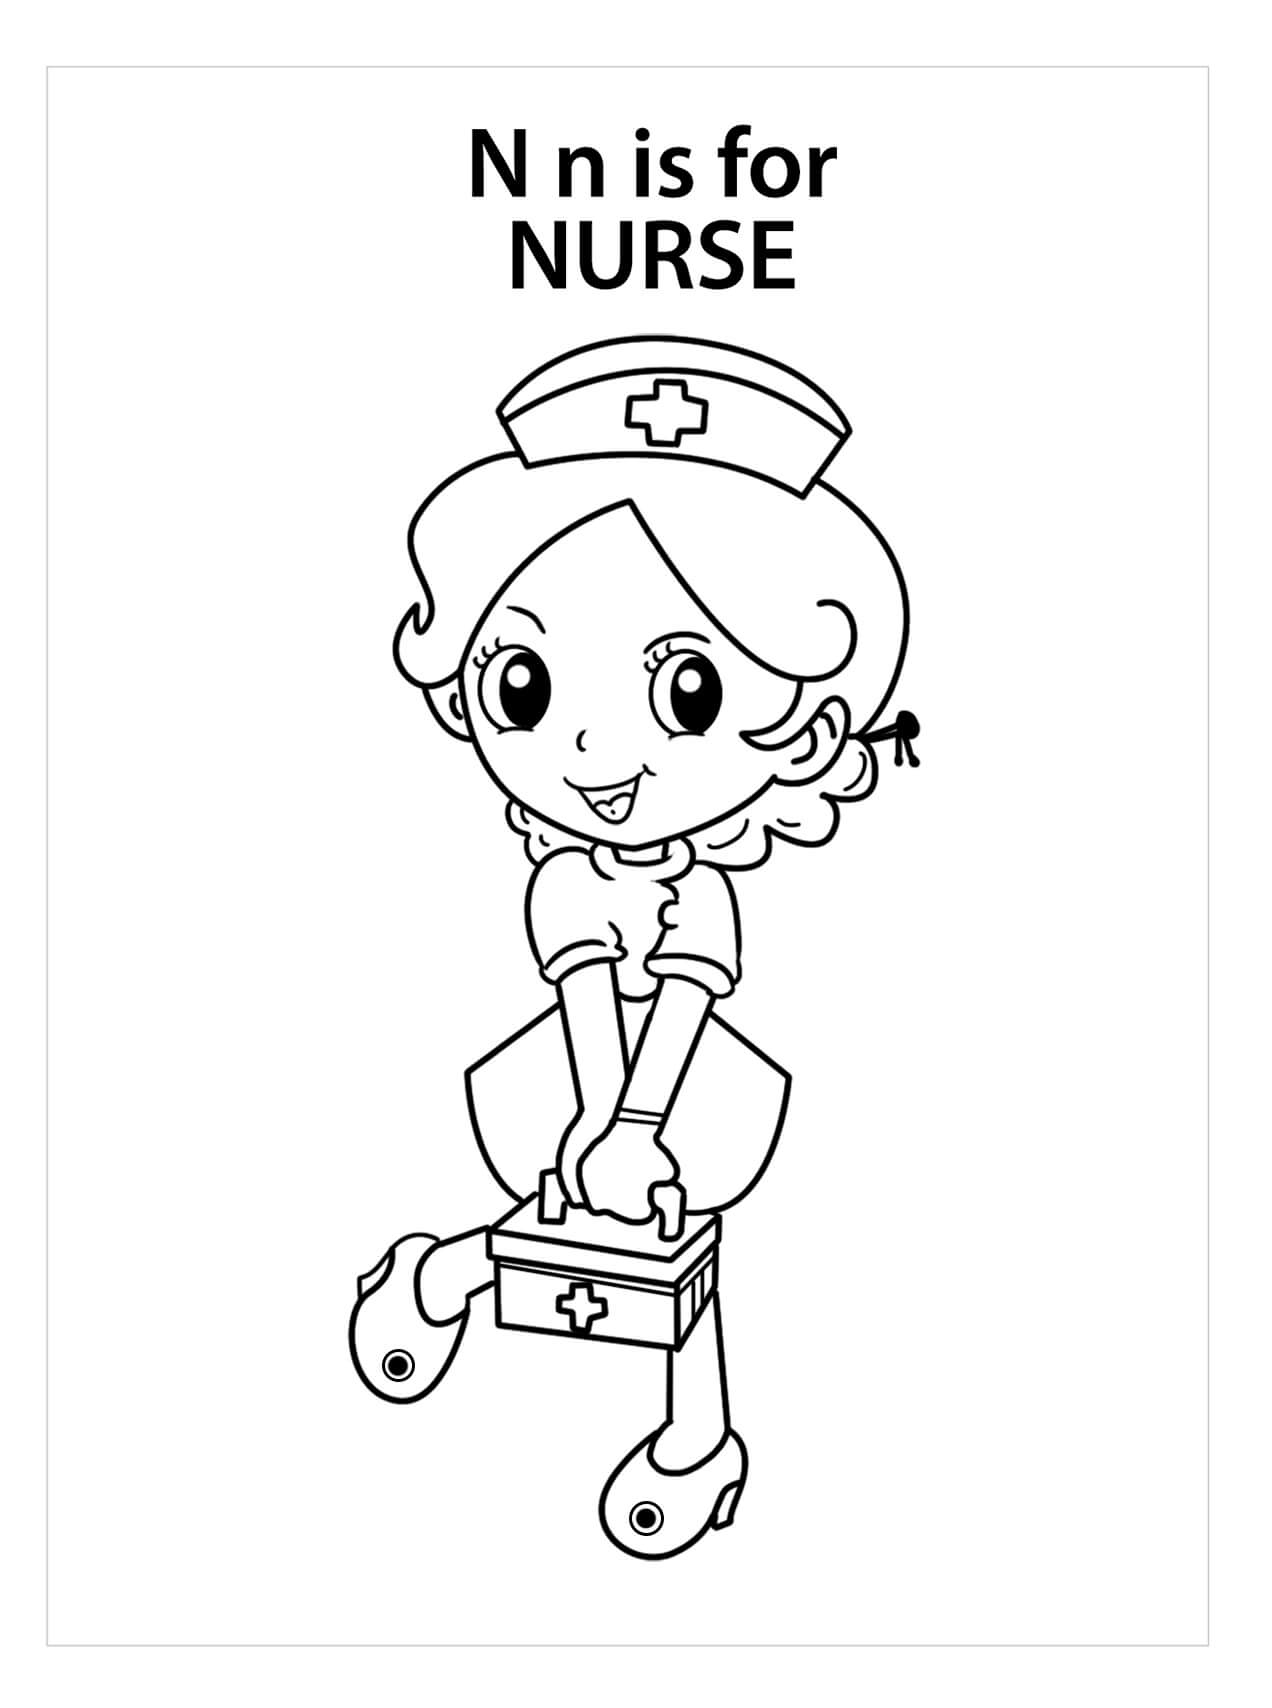 Dibujos de La Letra n es para Enfermera para colorear